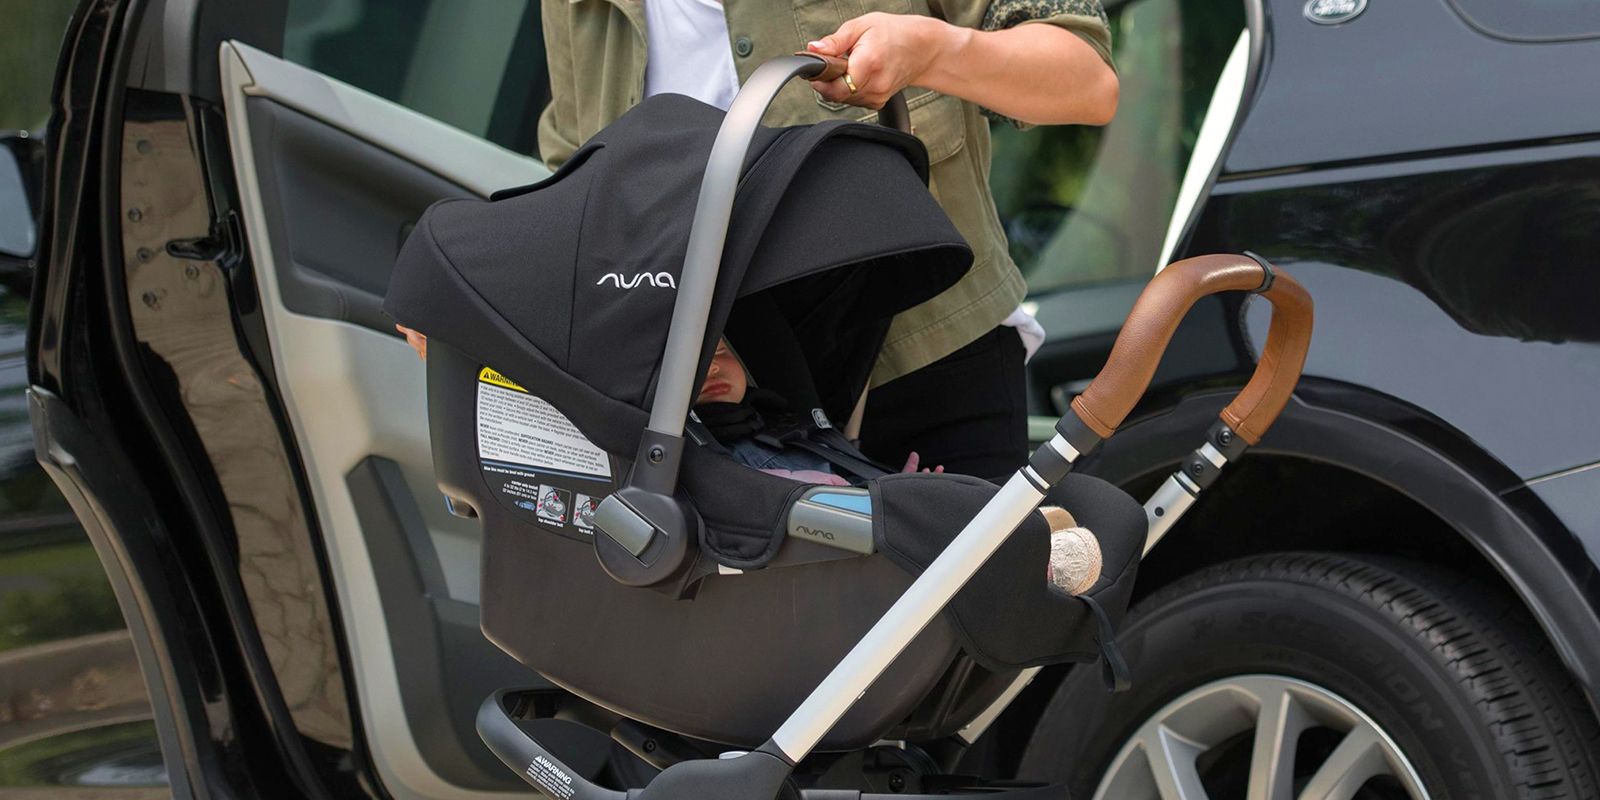 safest seat in car for infant